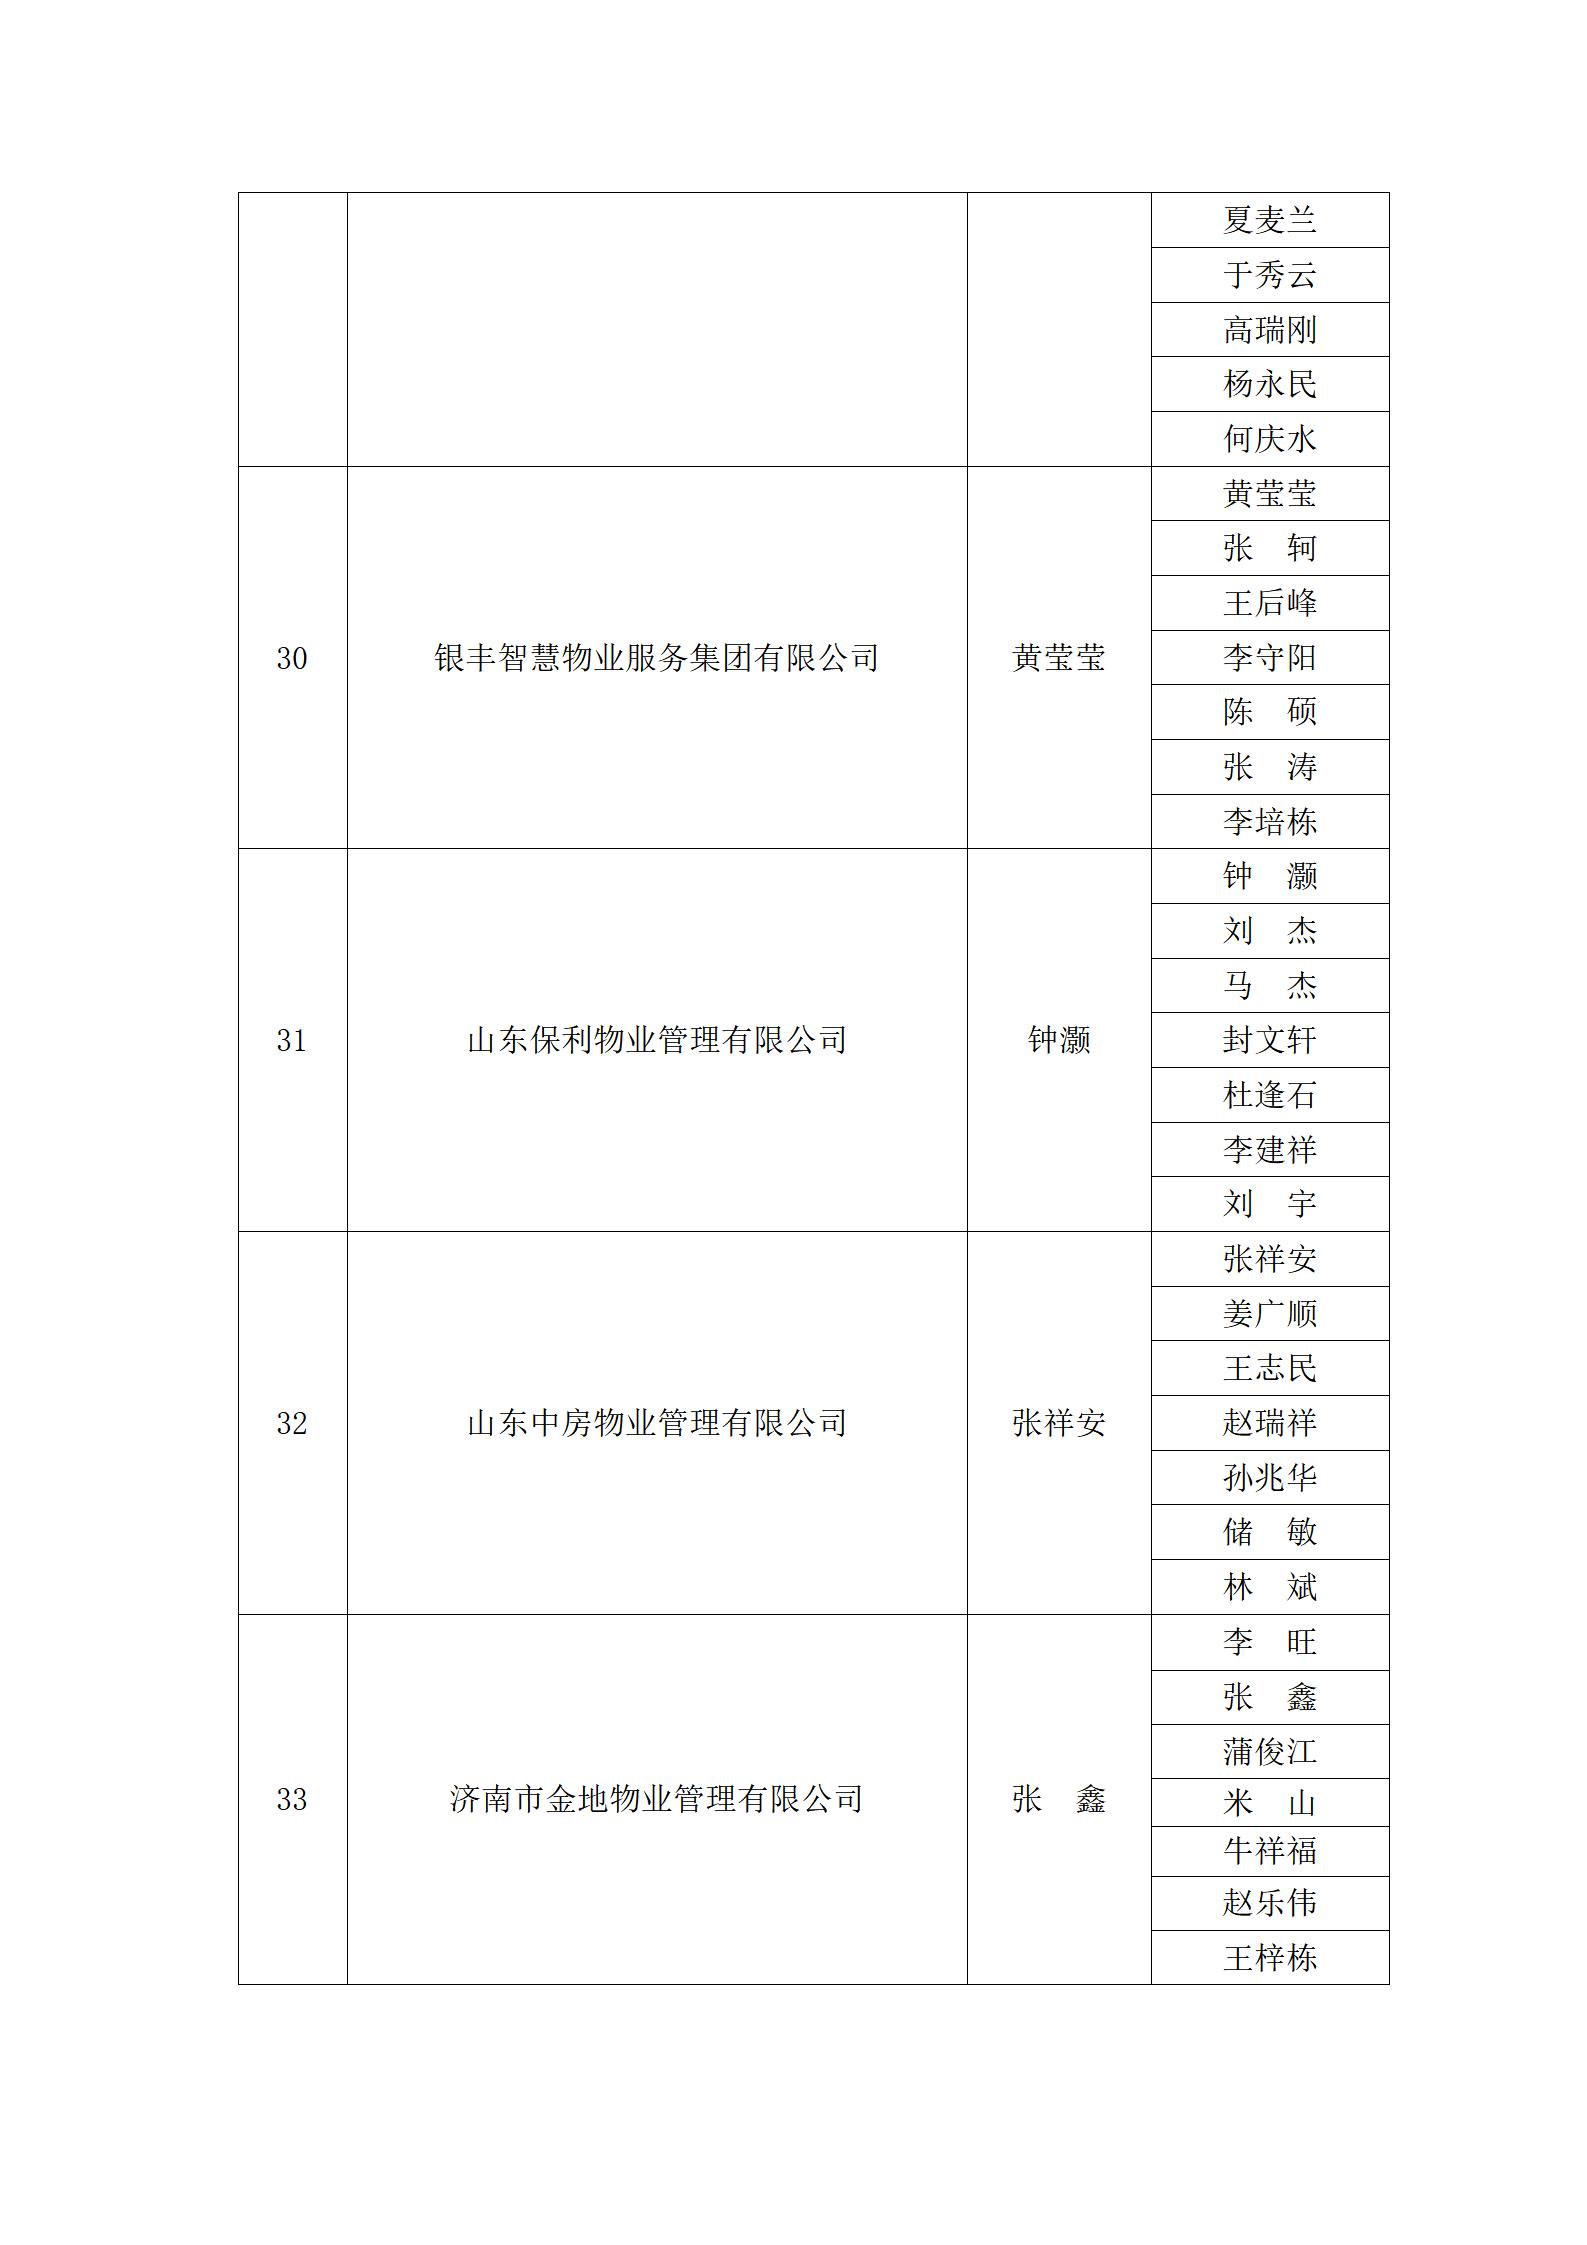 关于“明德杯”第六届济南市物业服务行业职业技能竞赛选手名单的公示_23